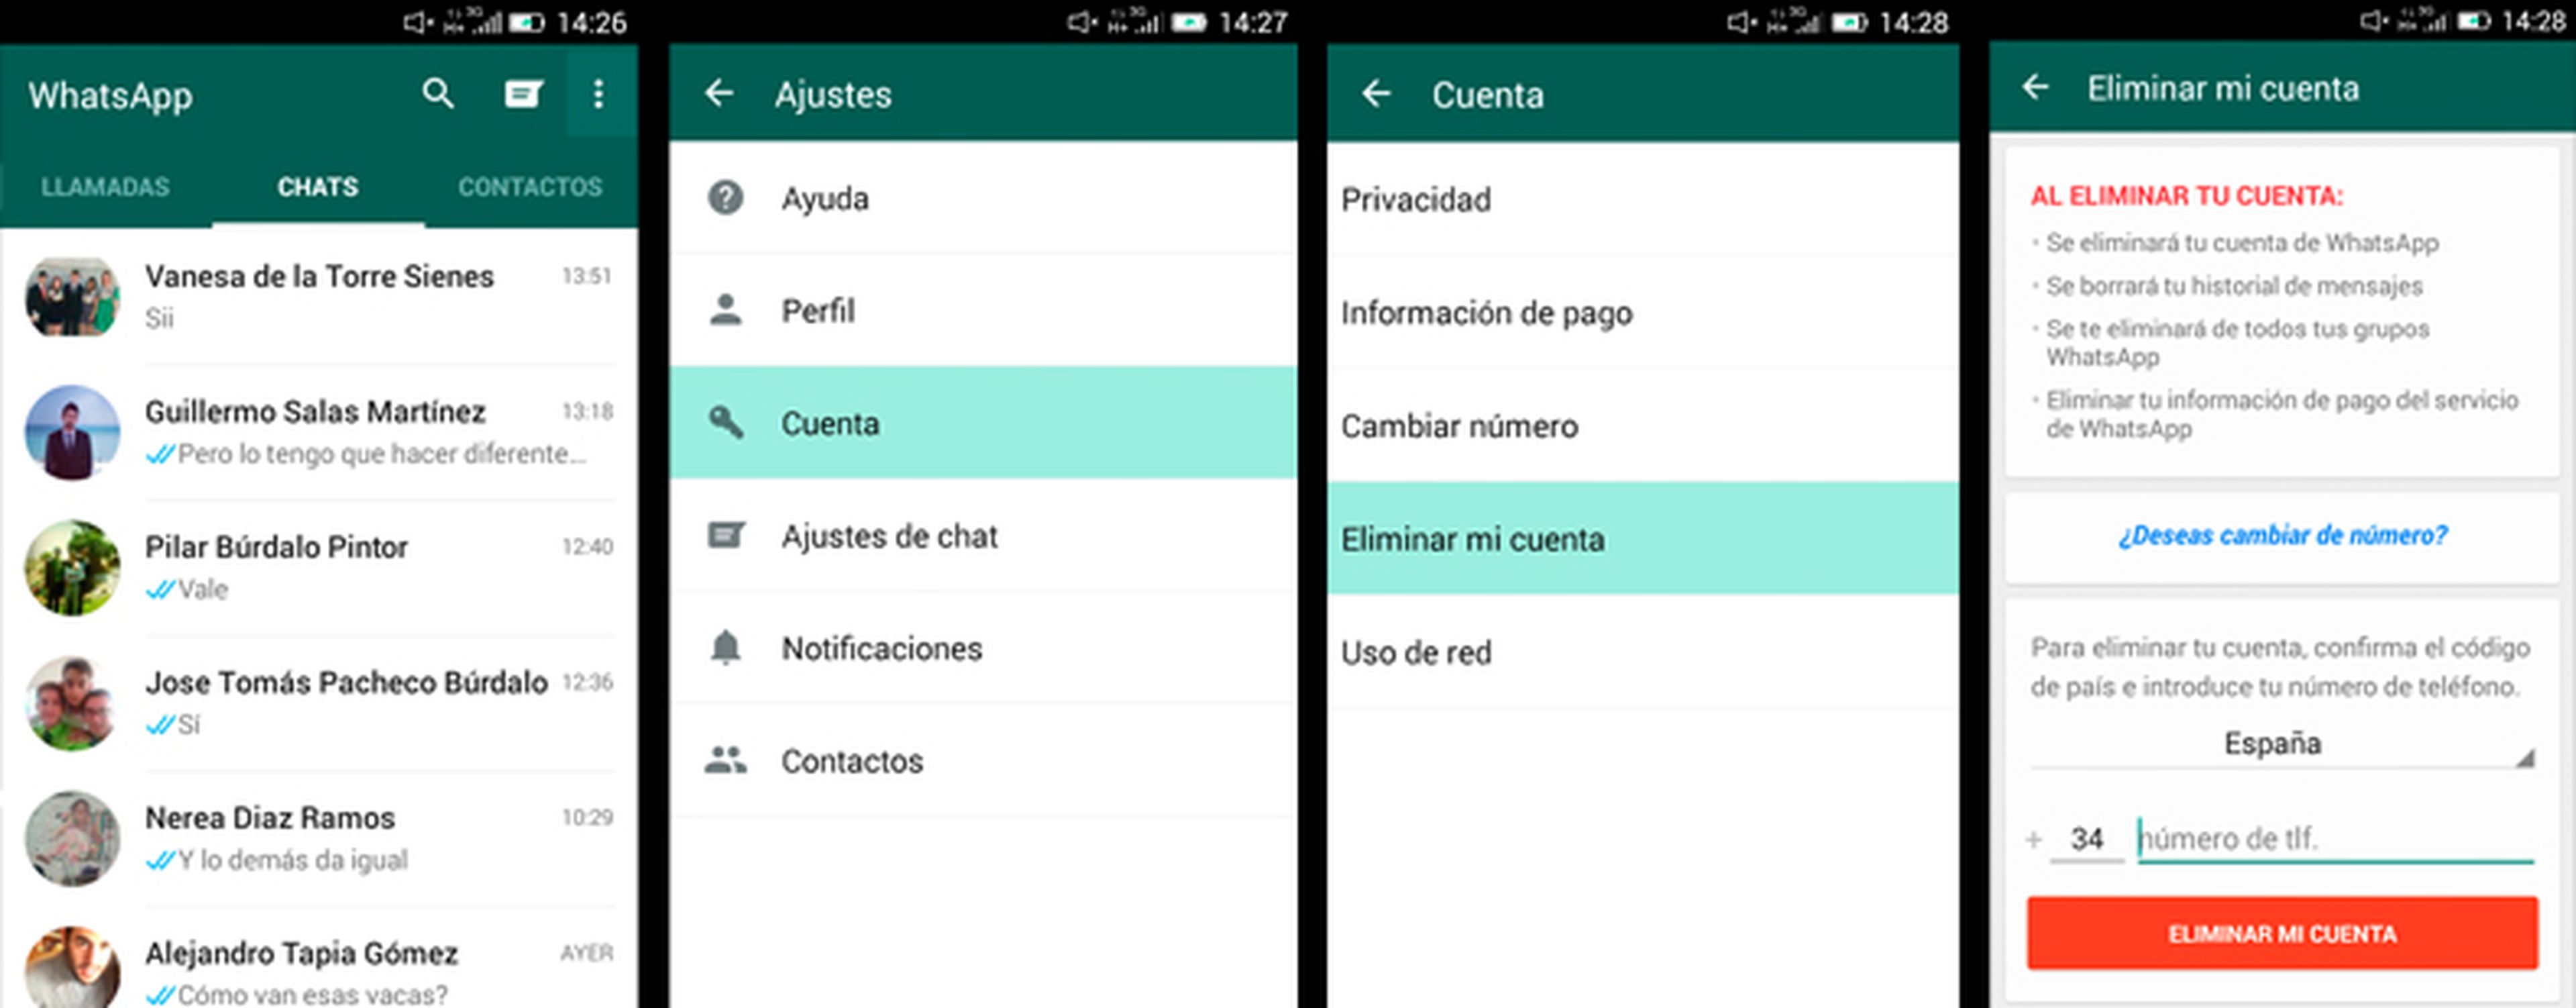 Borrar cuenta de WhatsApp paso a paso en Android